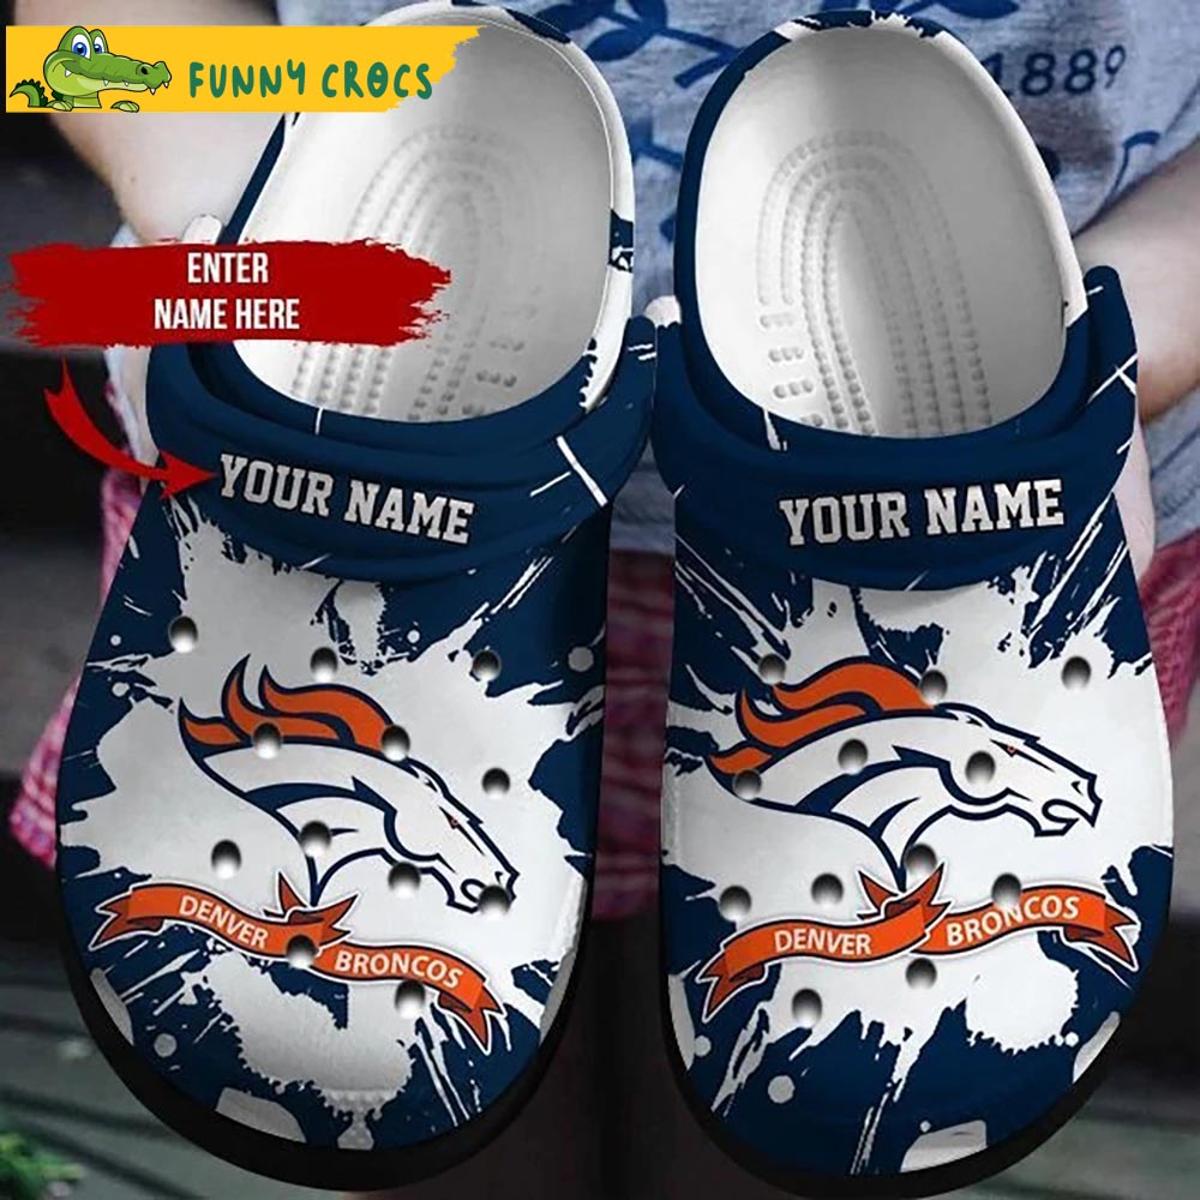 Best Personalized Denver Broncos Crocs Clog Shoes